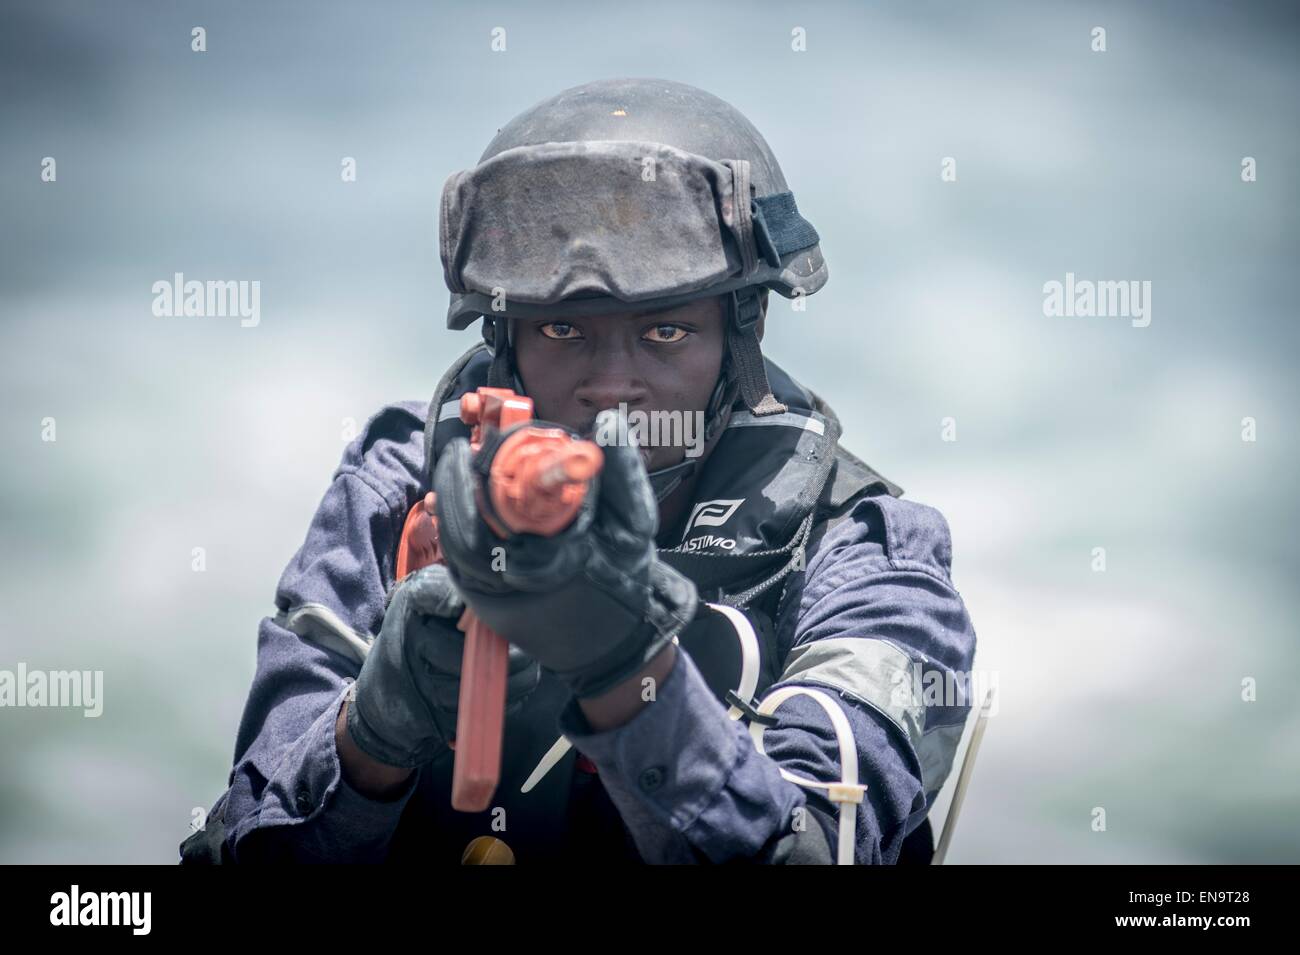 Senegalesische Truppen während eines Besuchs, Board, Durchsuchung und Beschlagnahme Bohrers auf Military Sealift Command gemeinsame High-Speed-Schiff USNS Speerspitze während der Übung der Sahara Express 25. April 2015 in den Golf von Guinea. Stockfoto